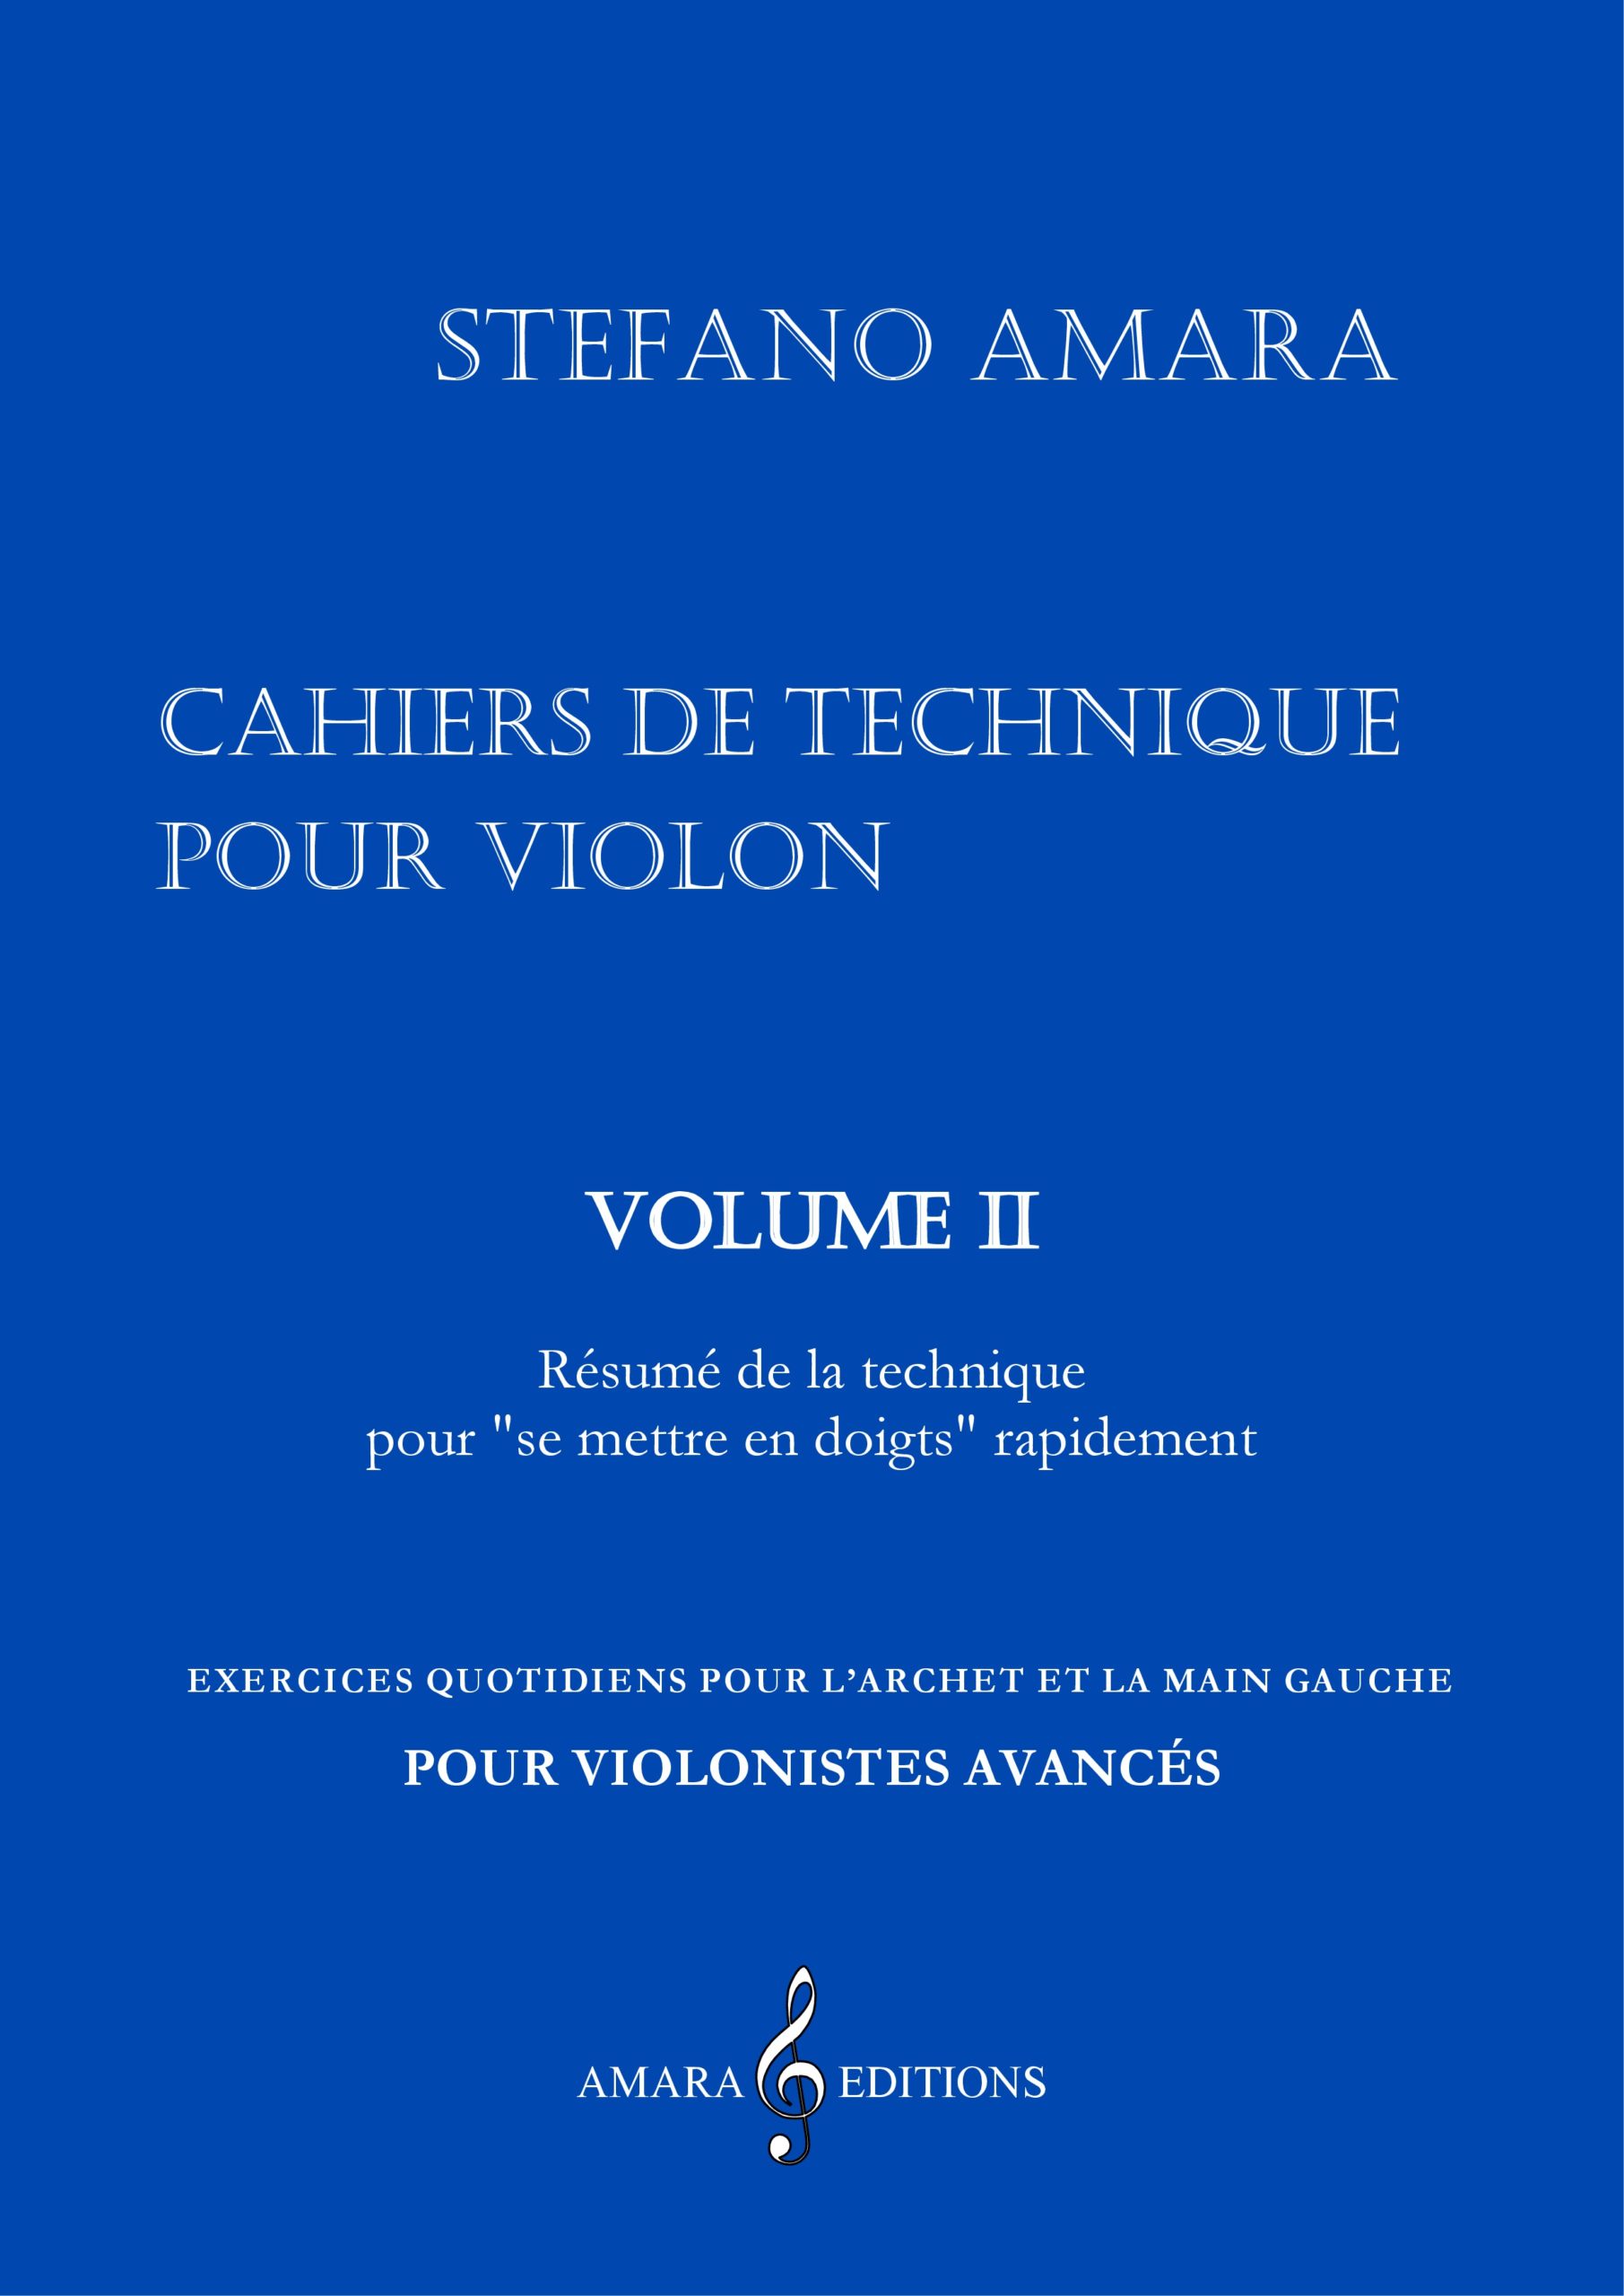 Cahiers de technique pour violon – Volume II (AMARA STEFANO)